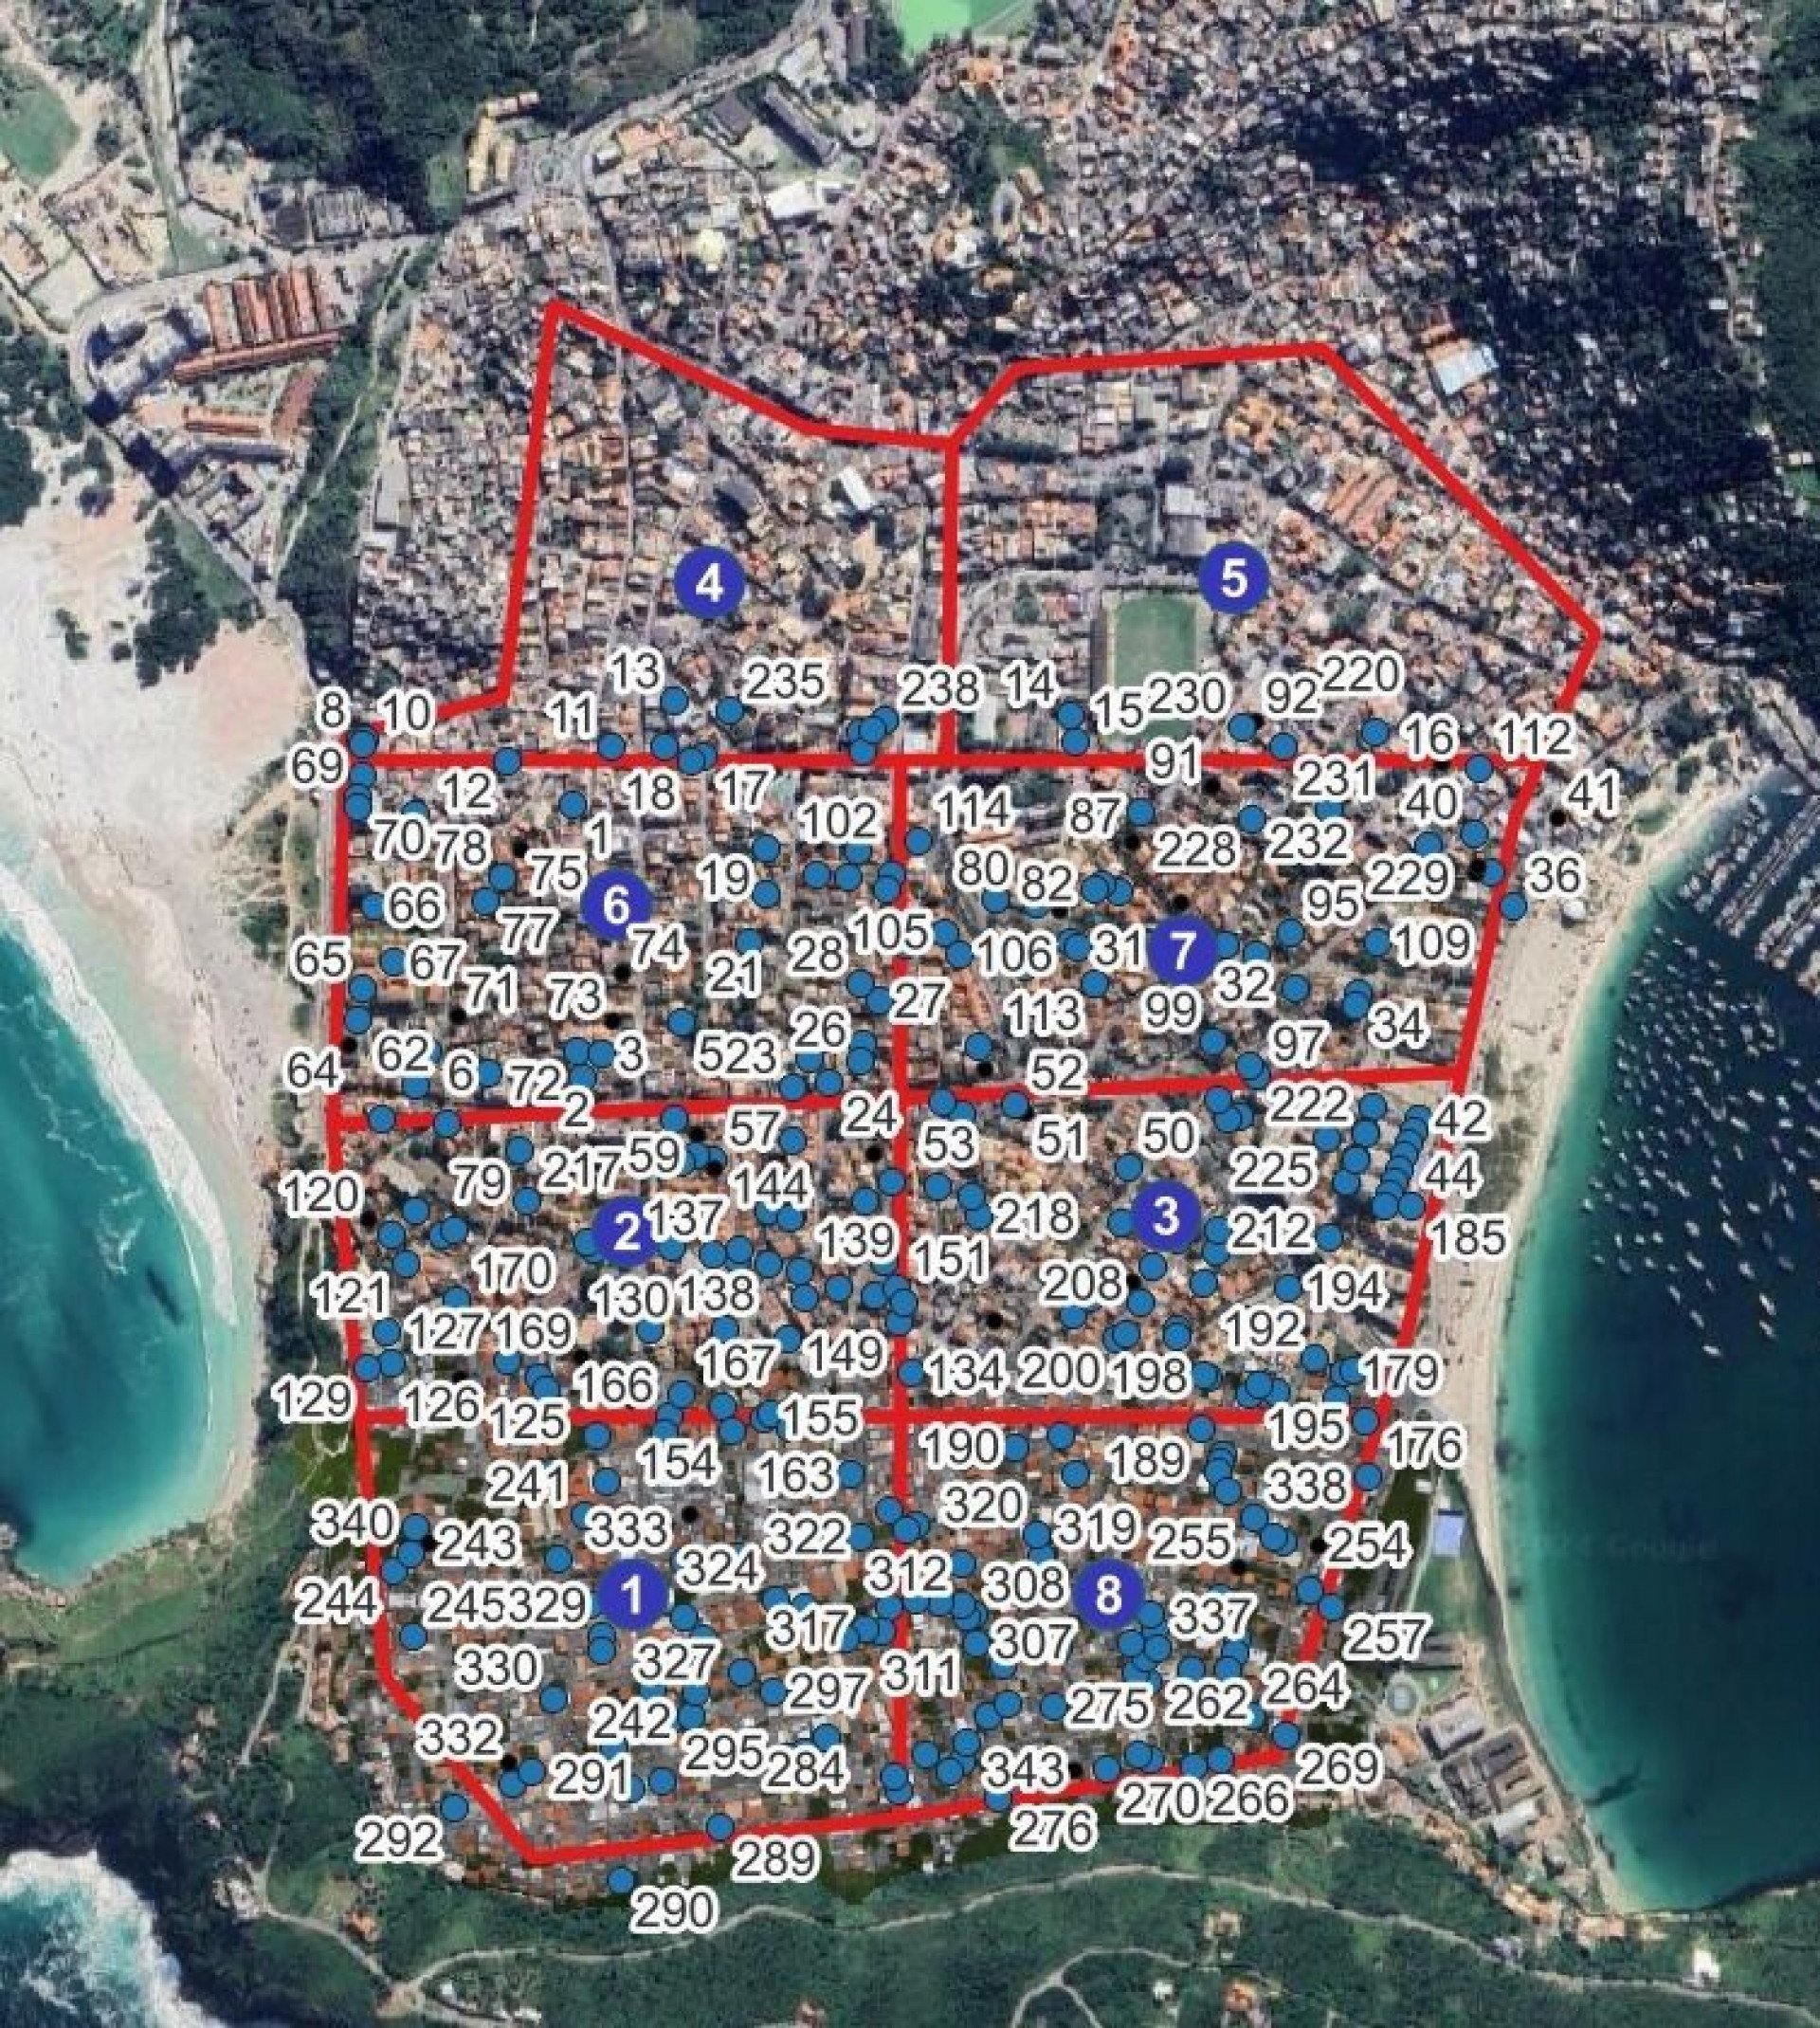 Mapeamento da cidade  - Wagner da Cunha